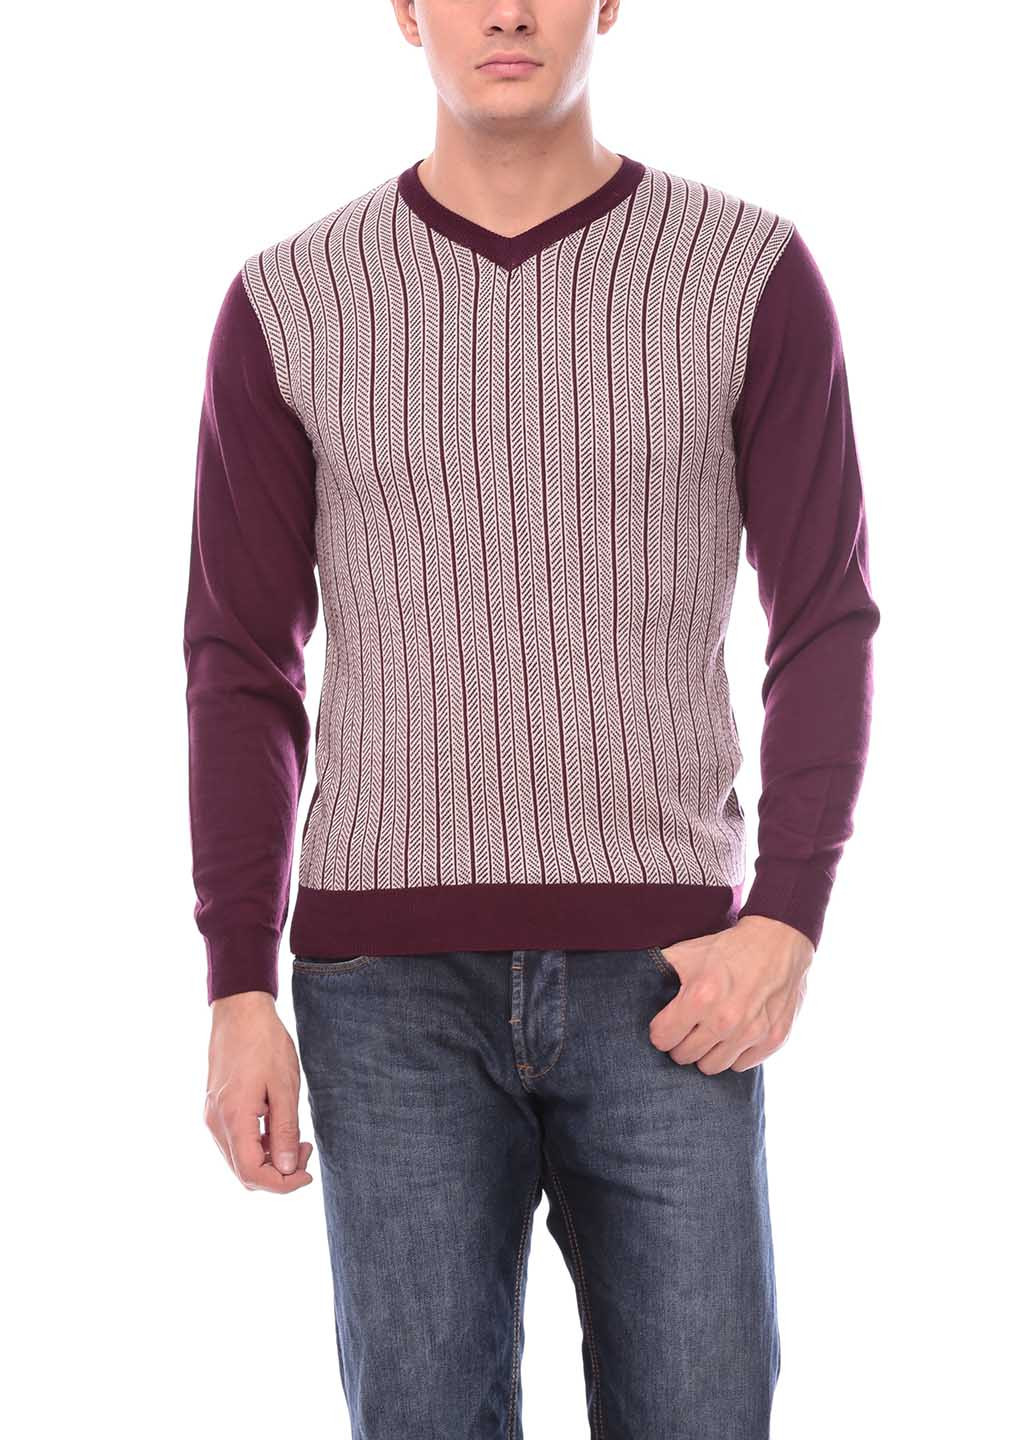 Сливовый демисезонный пуловер пуловер Flash